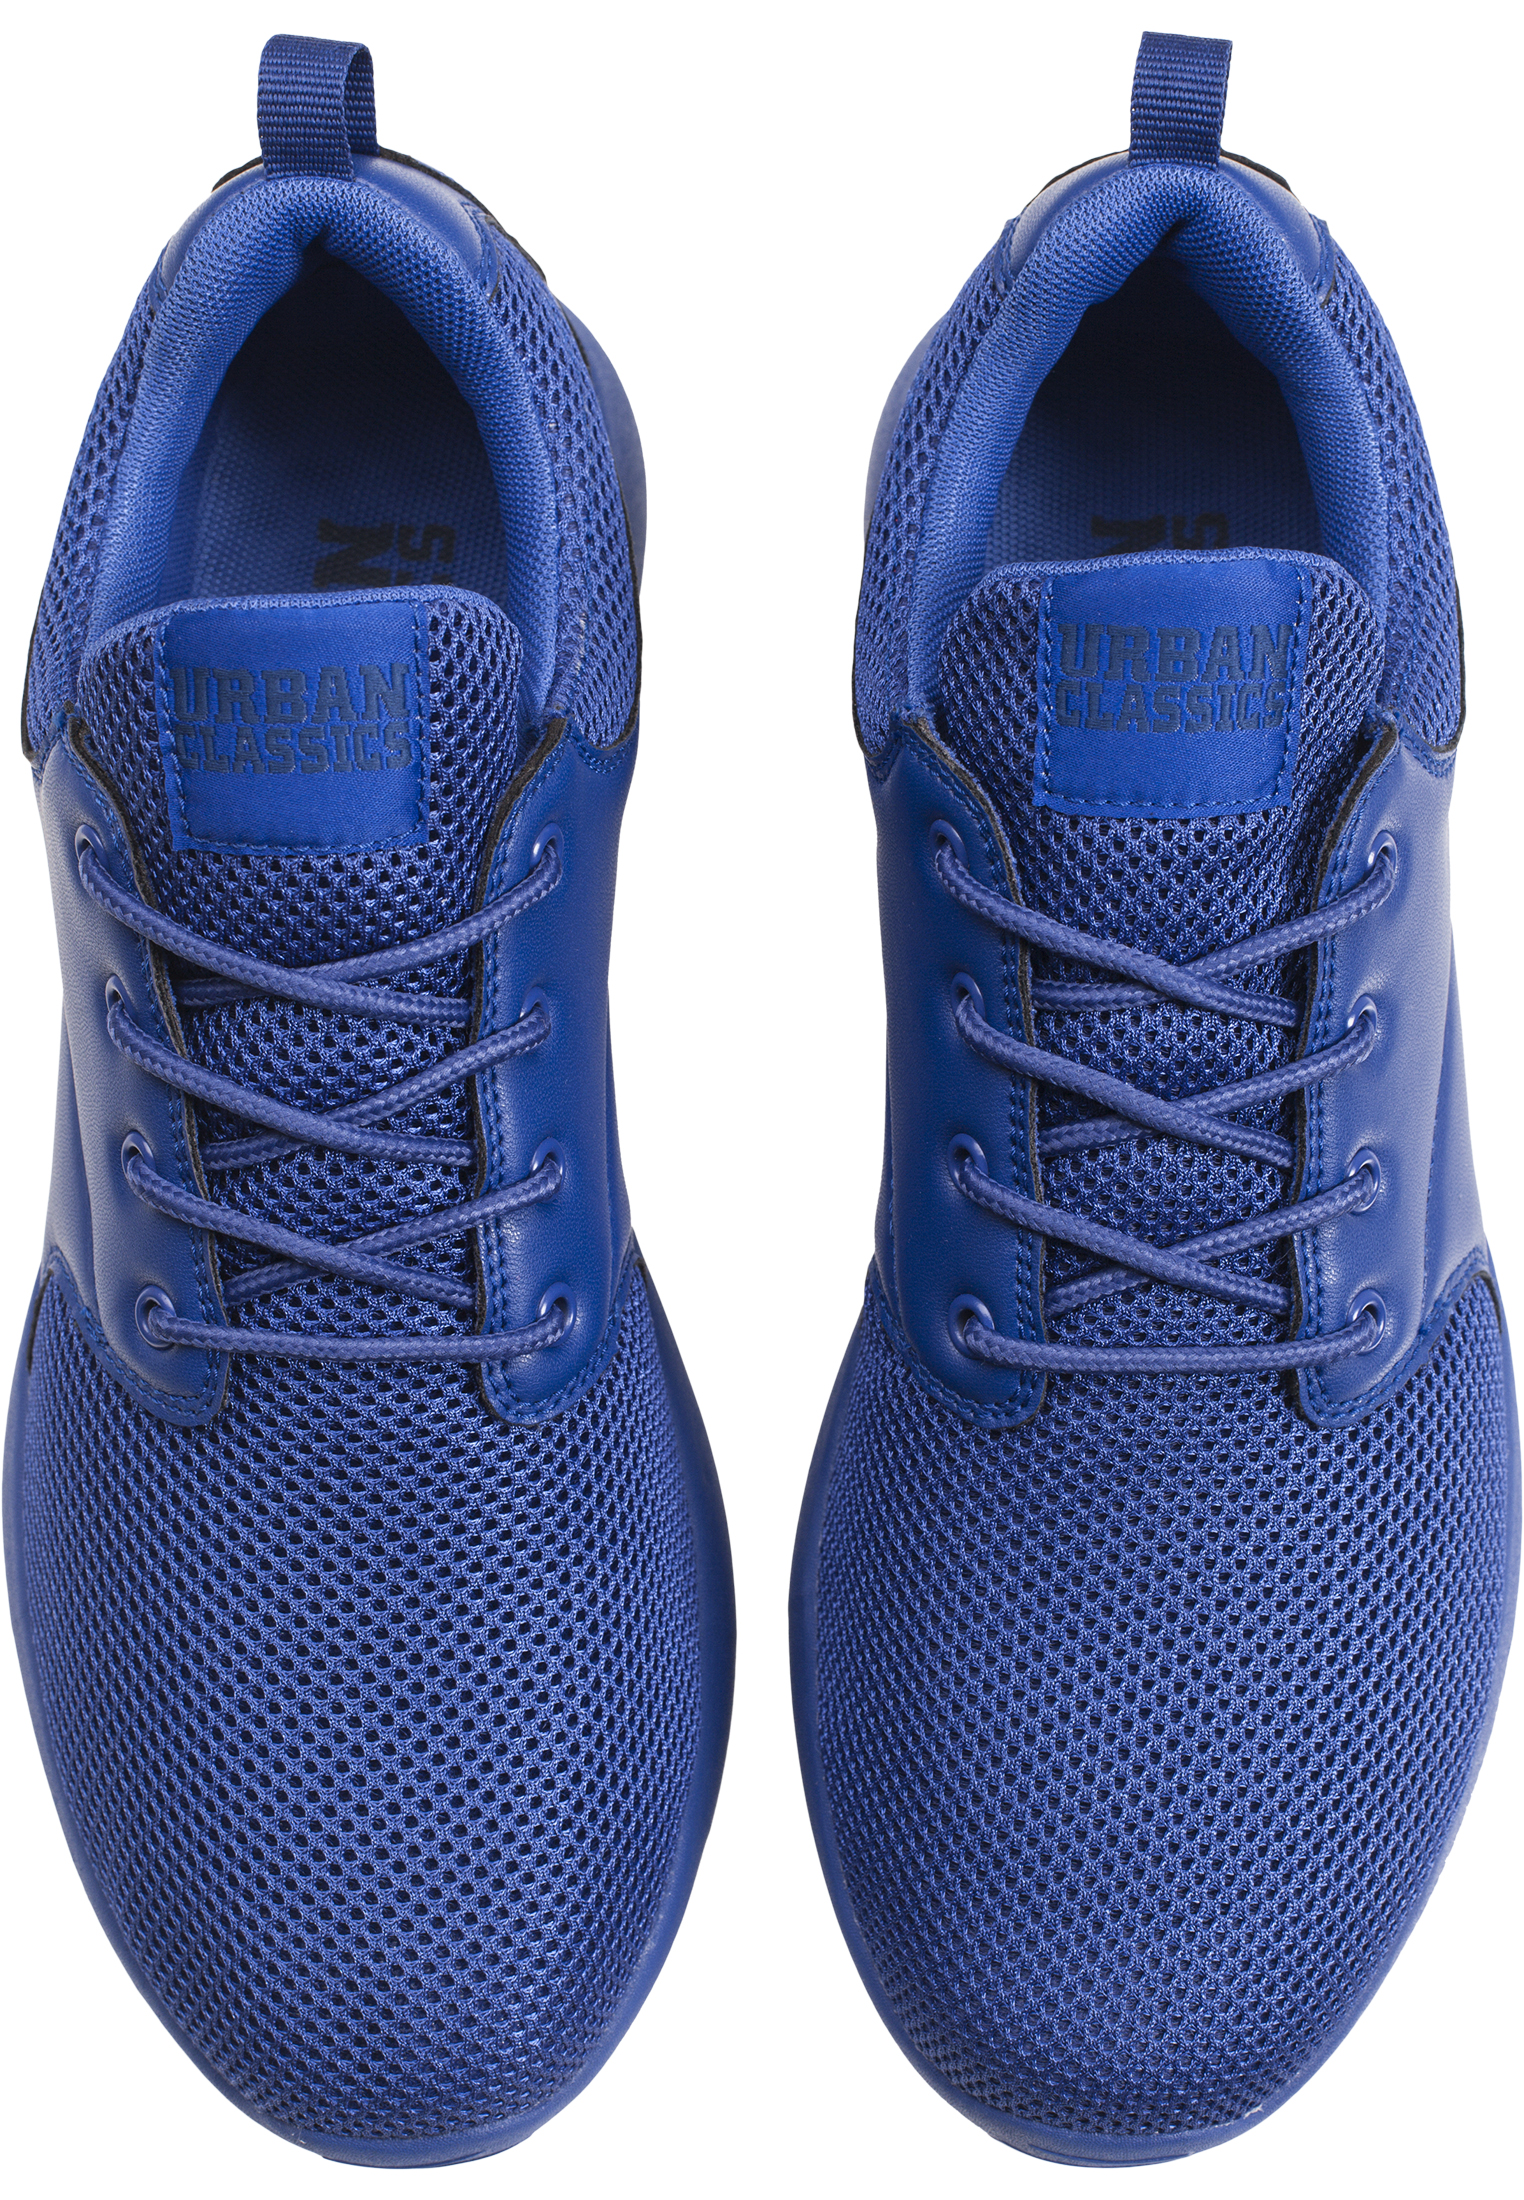 Schuhe Light Runner Shoe in Farbe cobaltblue/cobaltblue